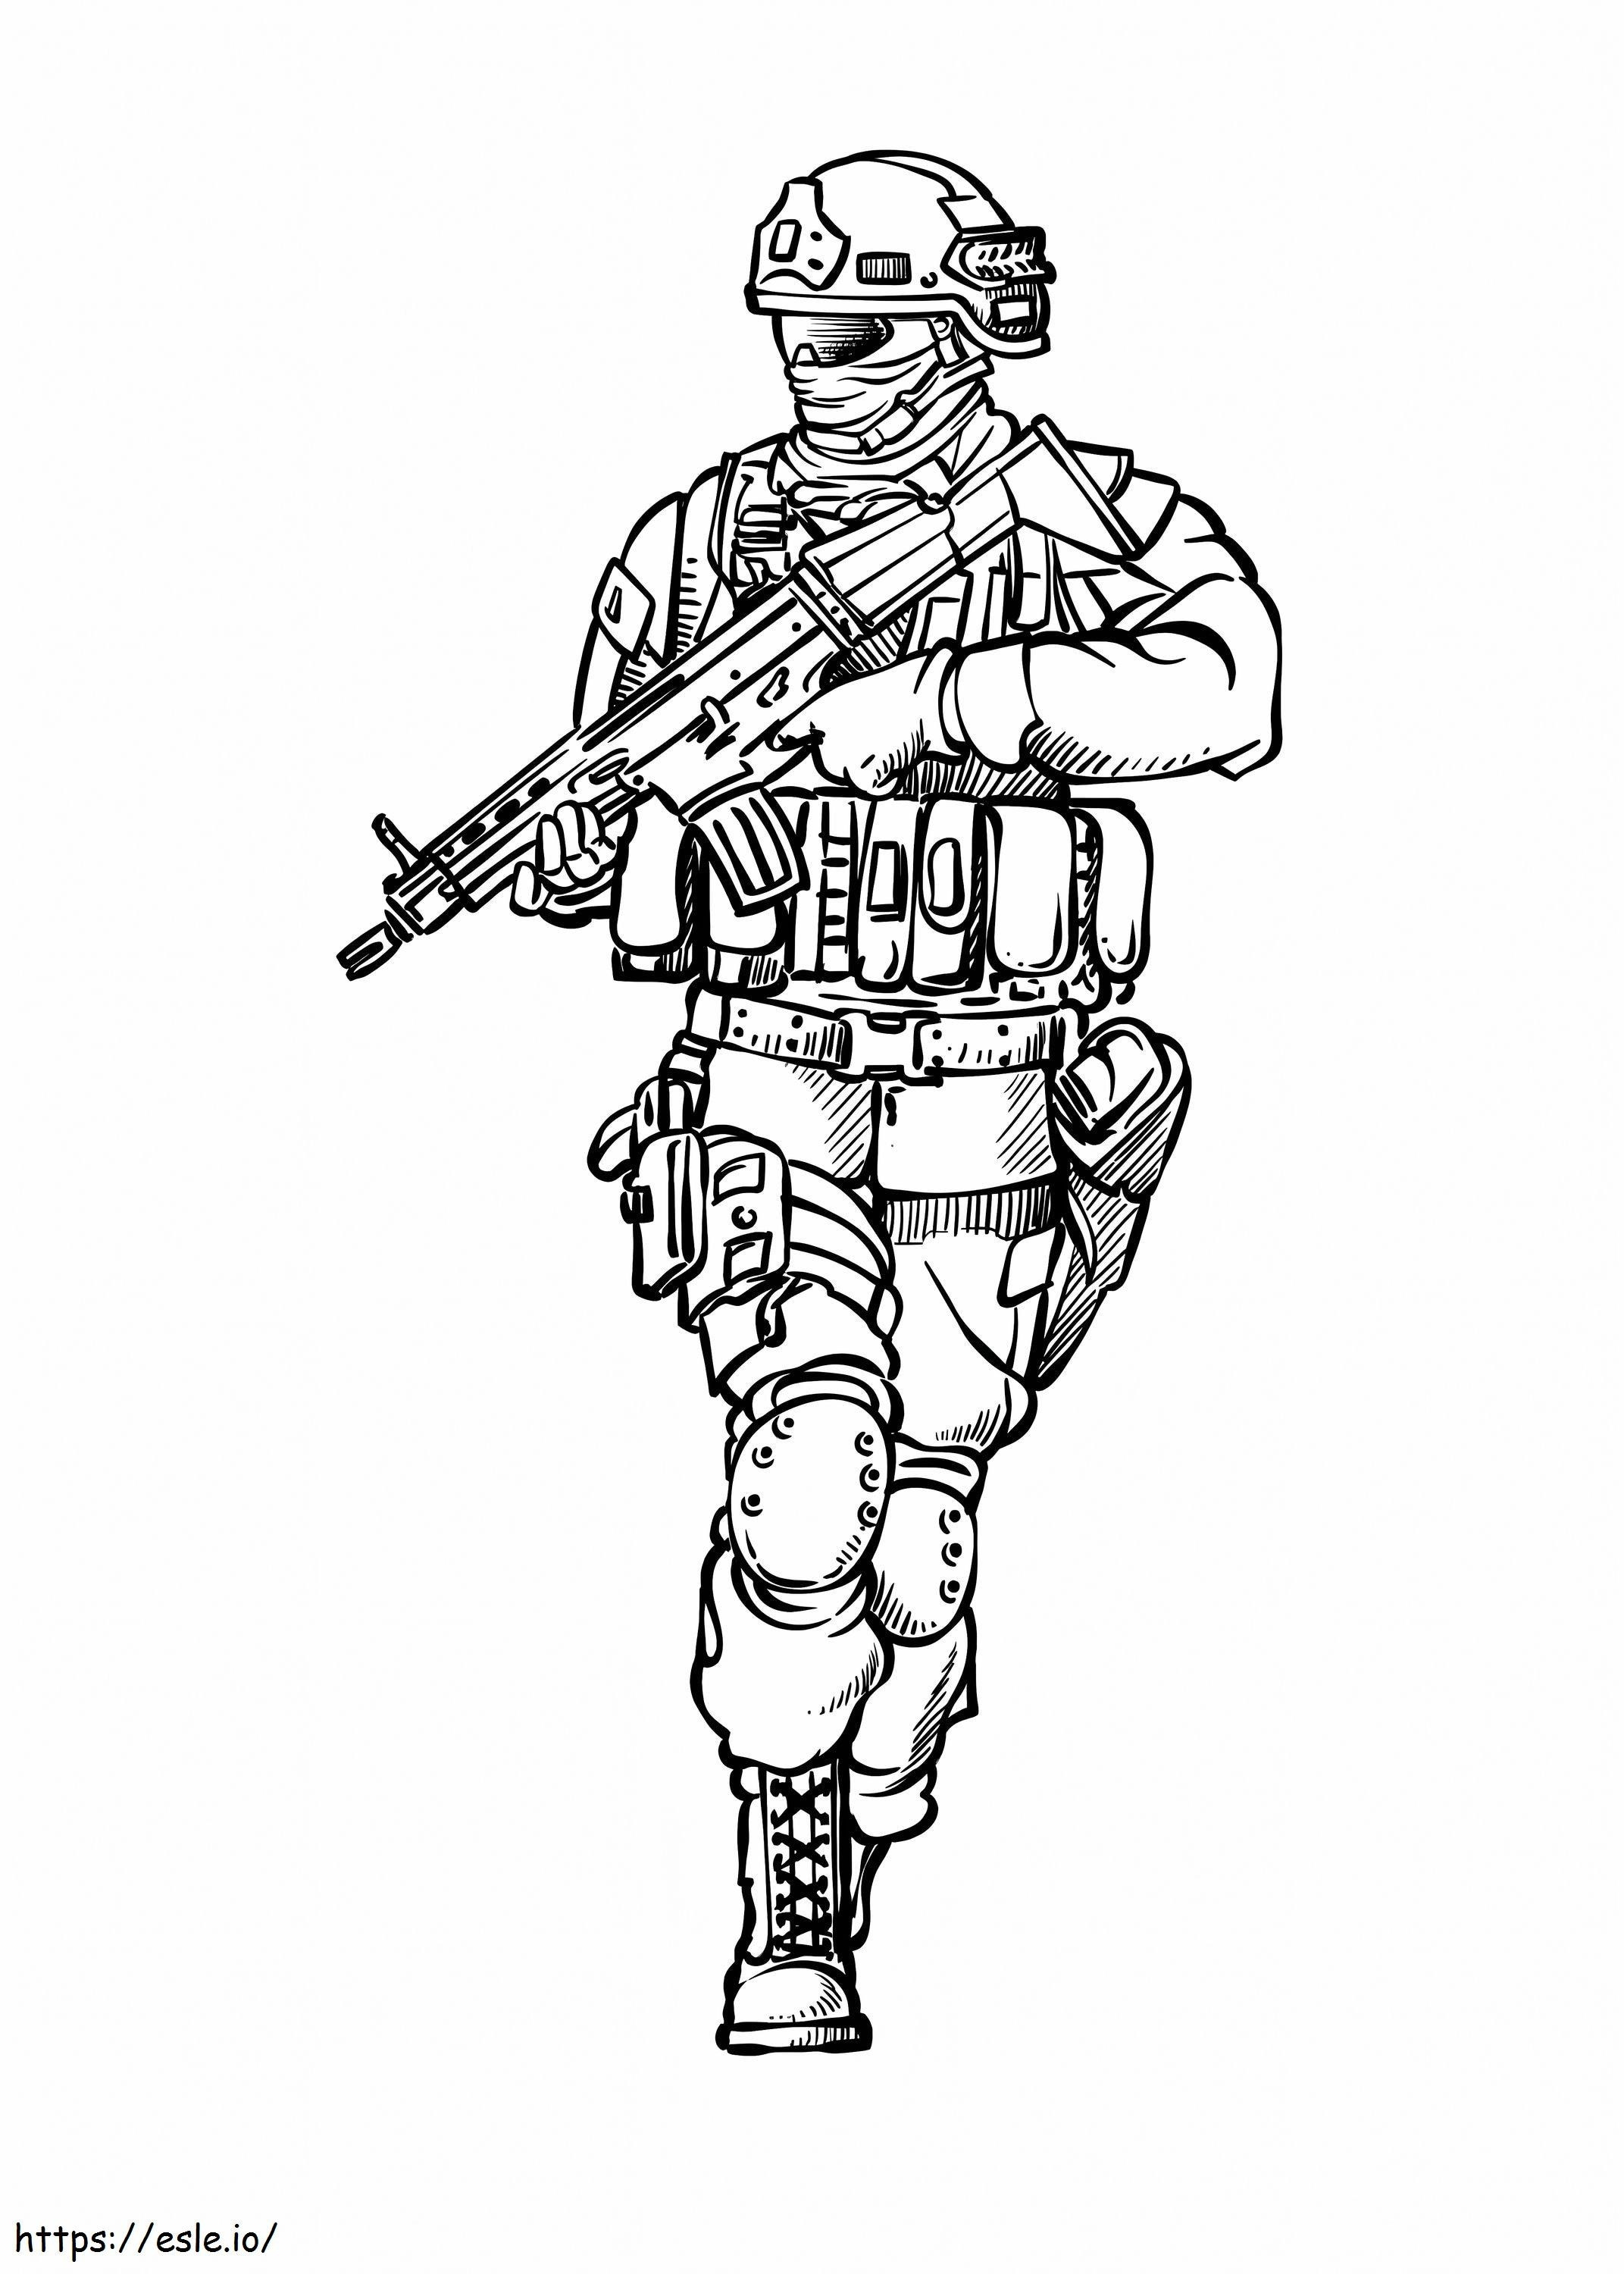 Soldato dell'esercito con la pistola da colorare